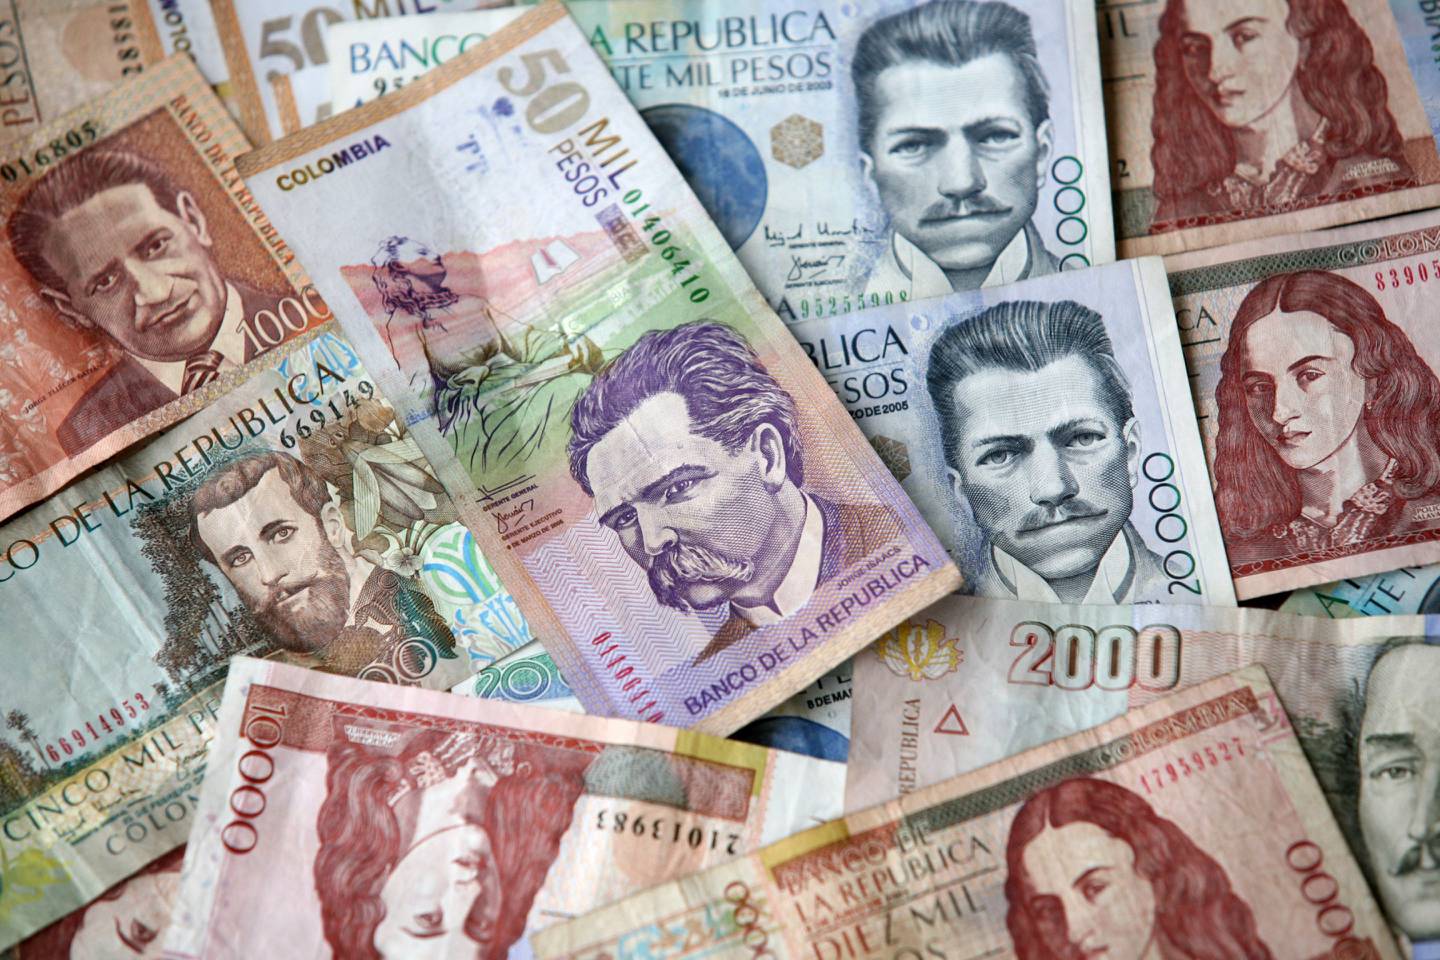 Sindicatos pedirán nuevo aumento del salario mínimo en Colombia por la inflación